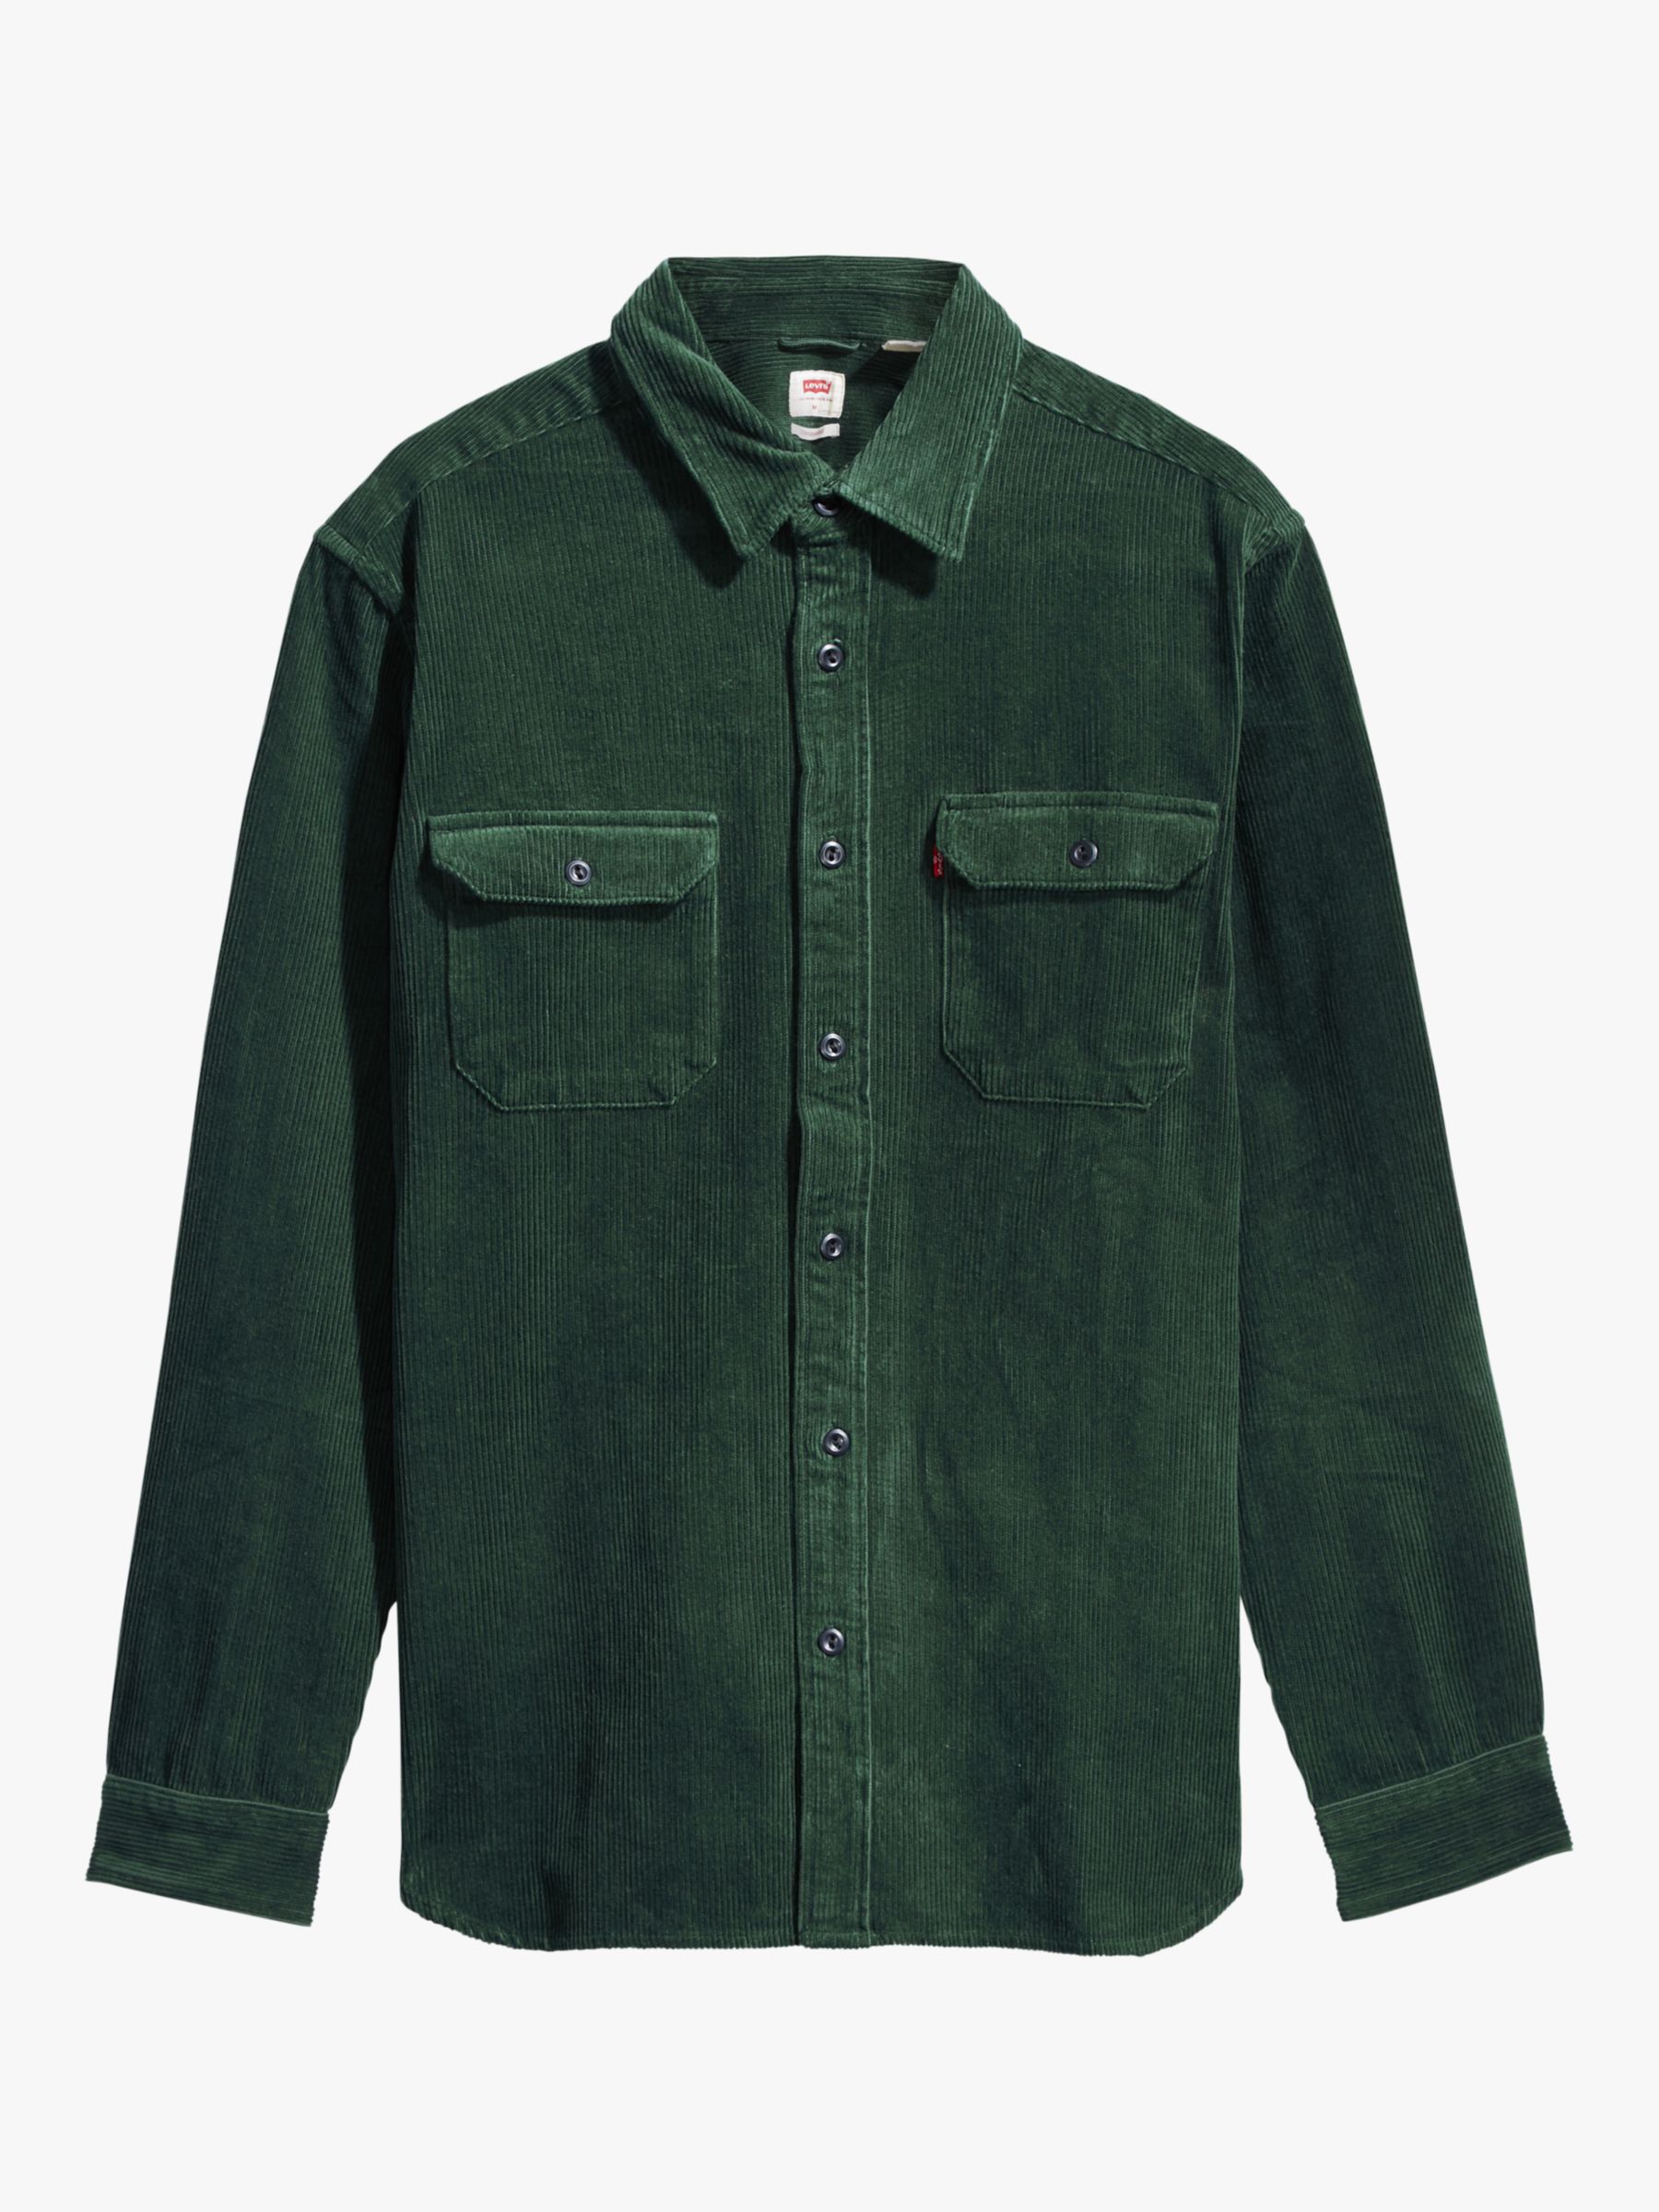 levis shirt green